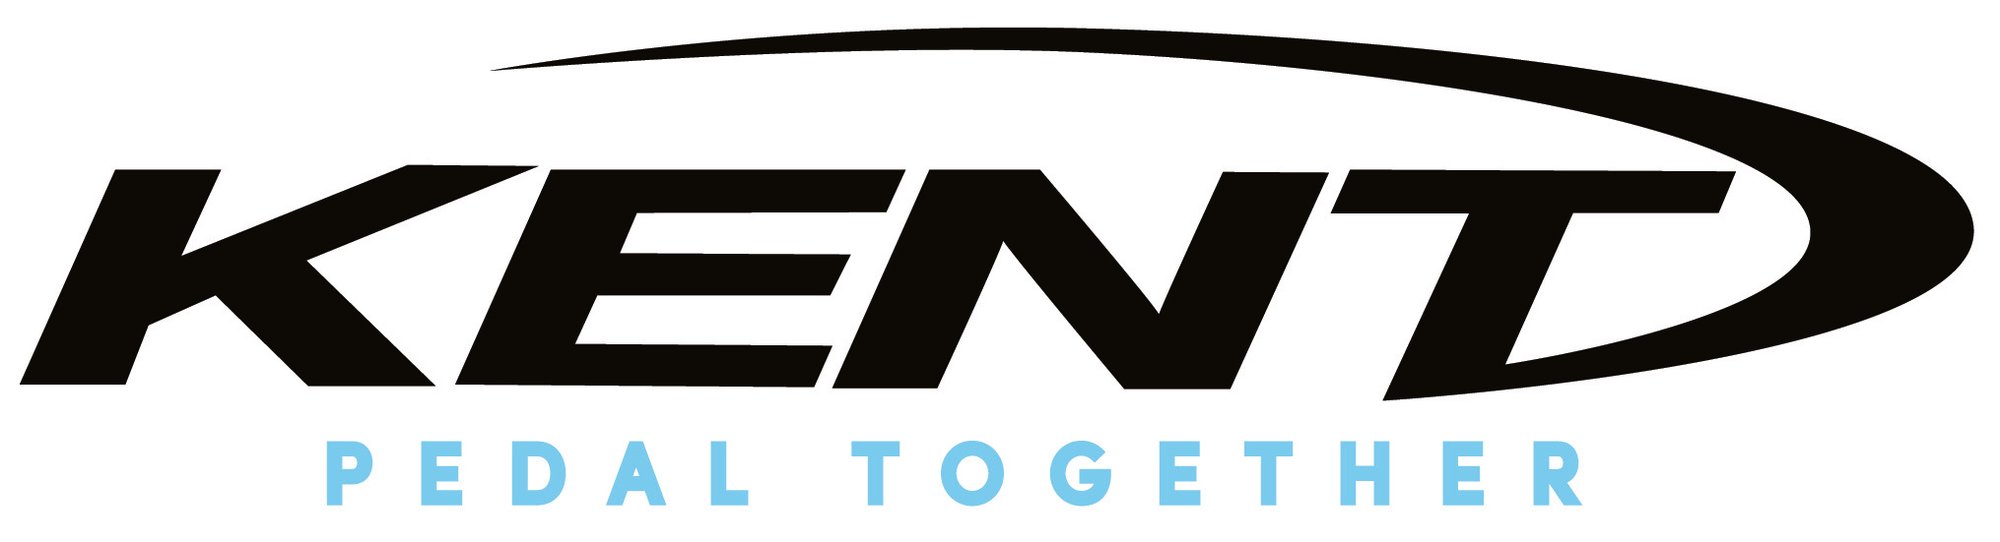 Kent-PedalTogether_logo2